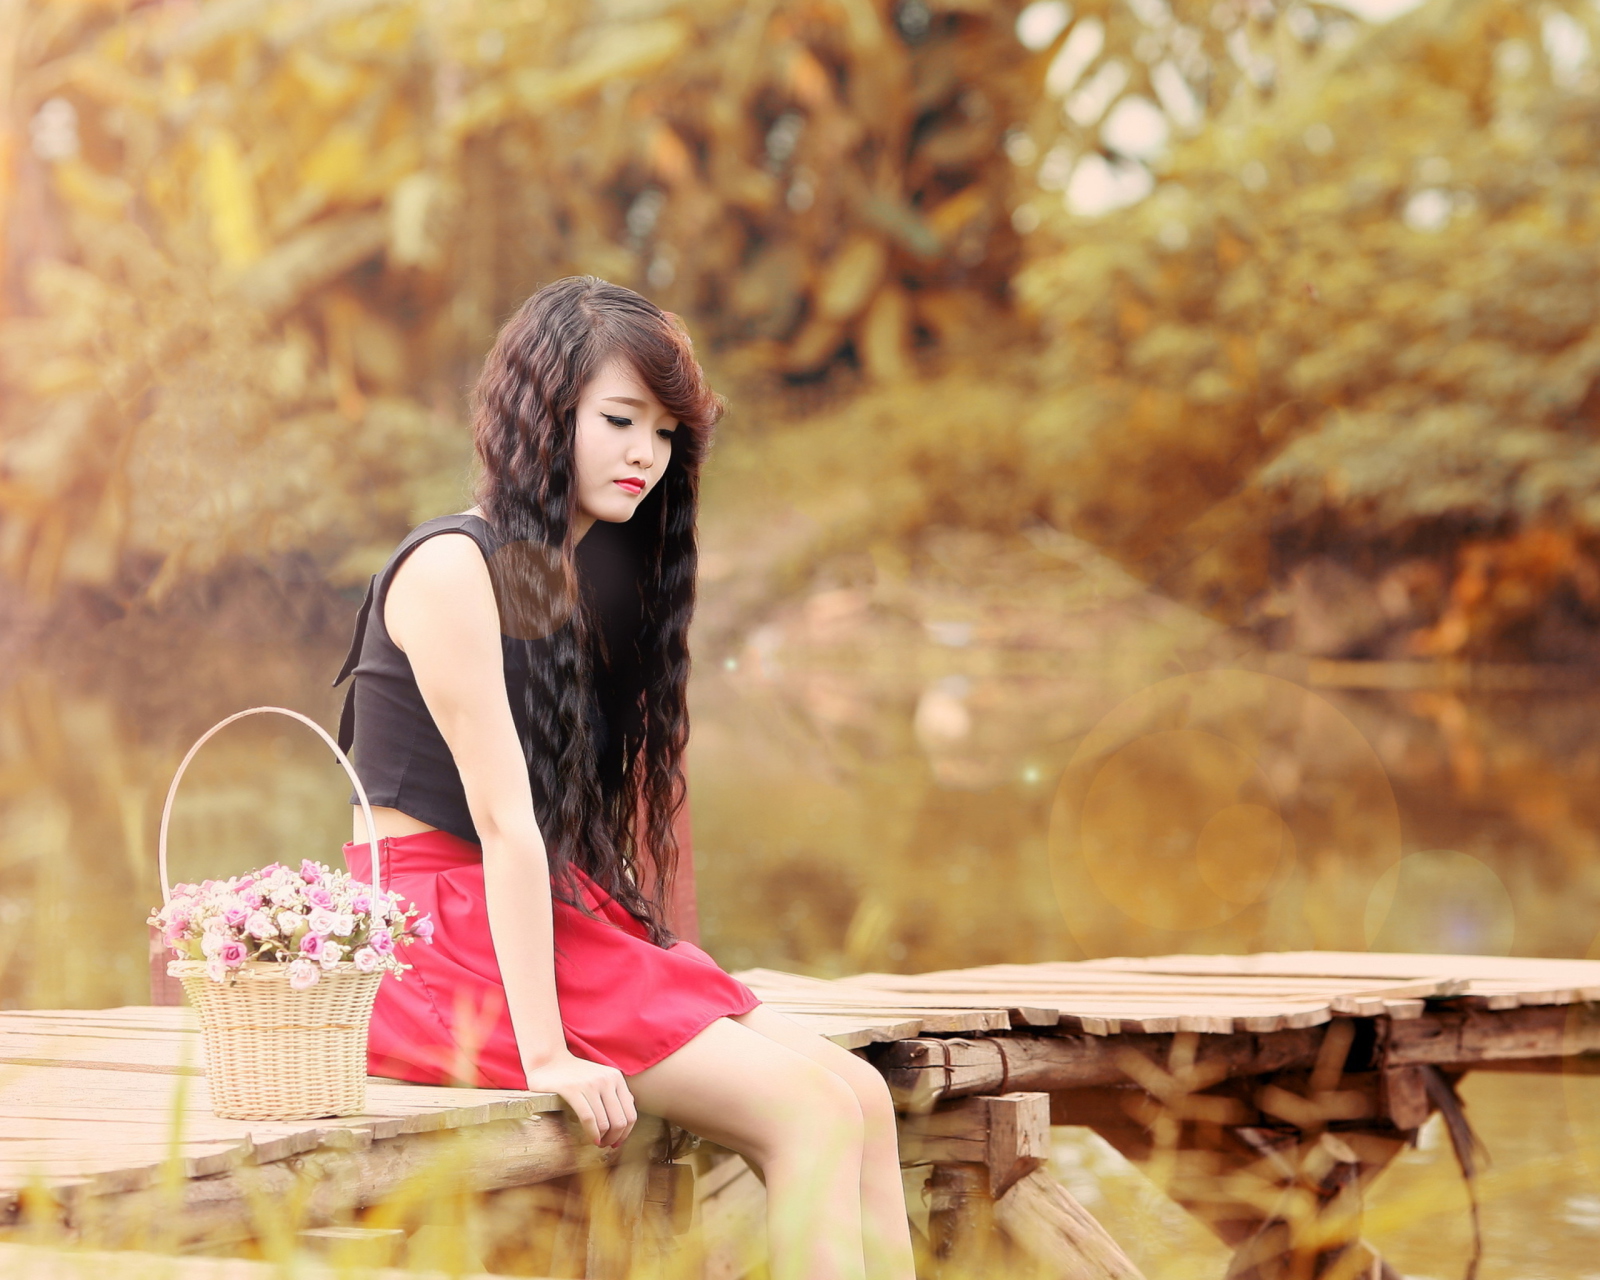 Sfondi Sad Asian Girl With Flower Basket 1600x1280